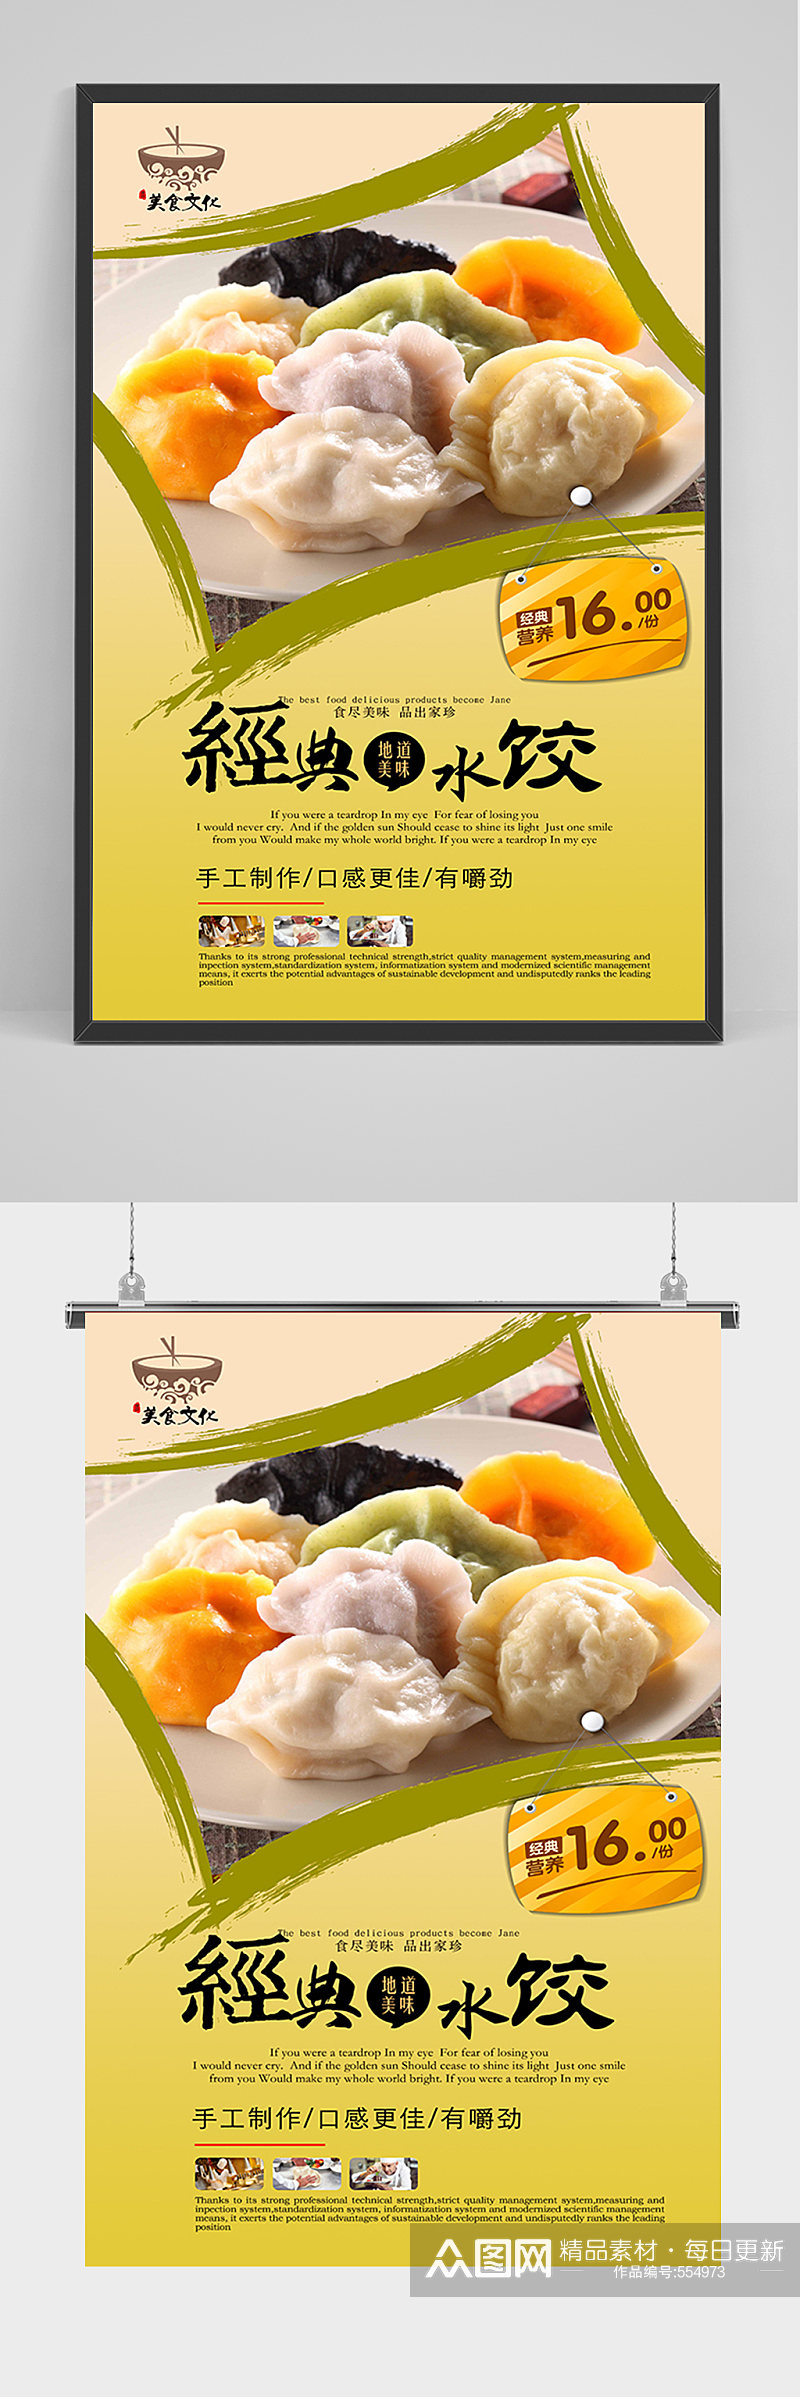 经典水饺宣传海报素材